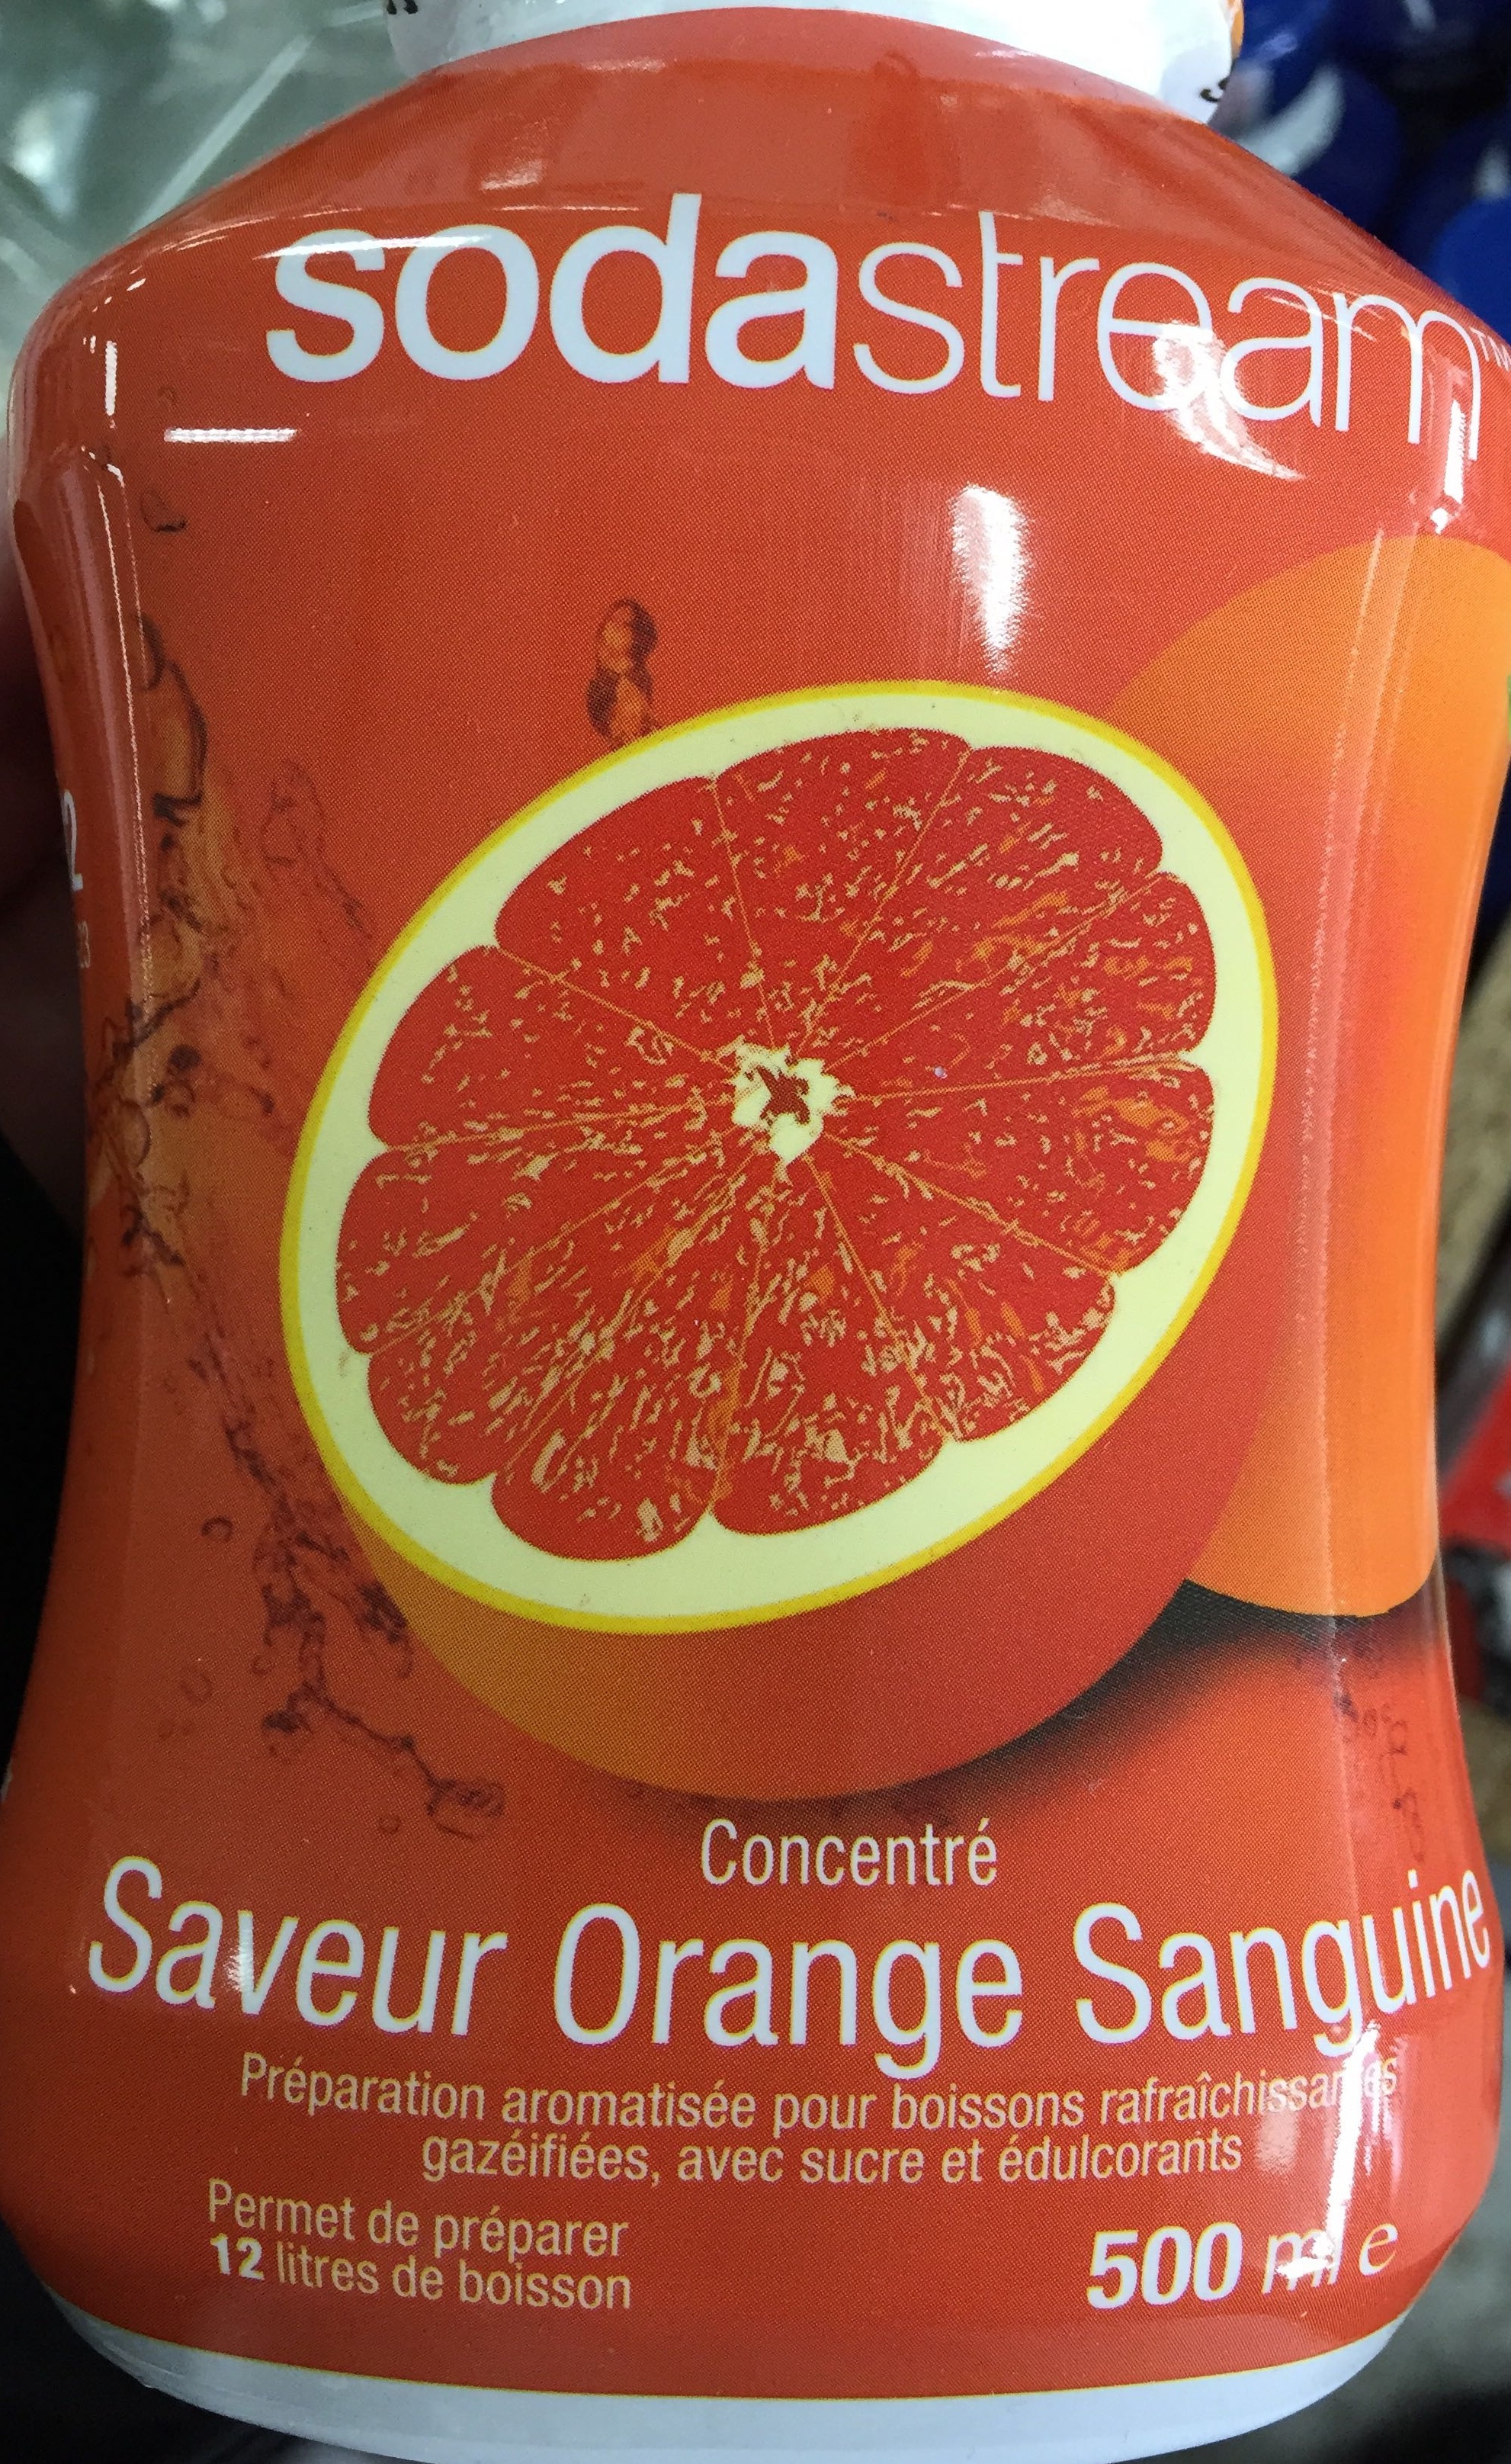 Concentré saveur Orange Sanguine - Product - fr